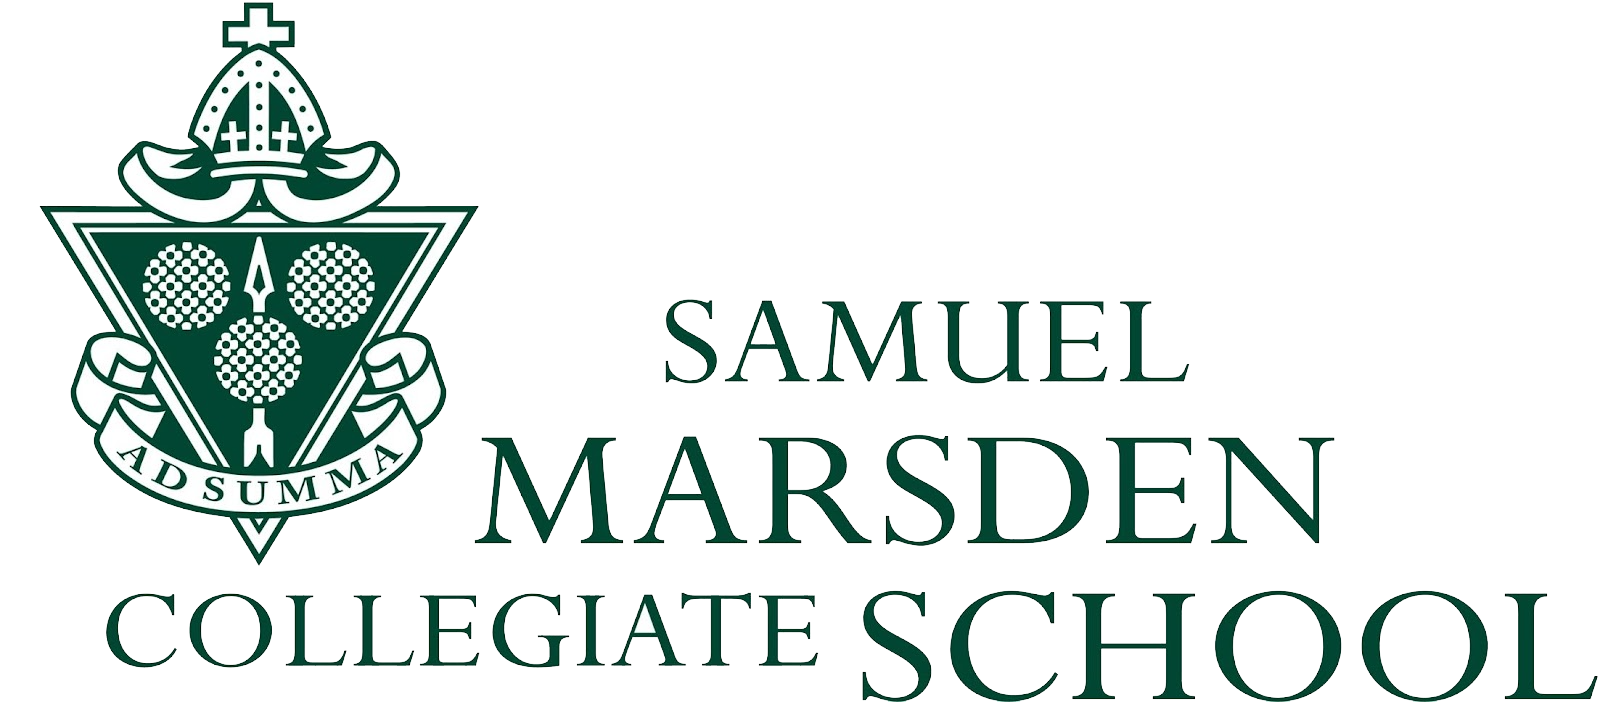 Samuel Marsden Collegiate School Logo